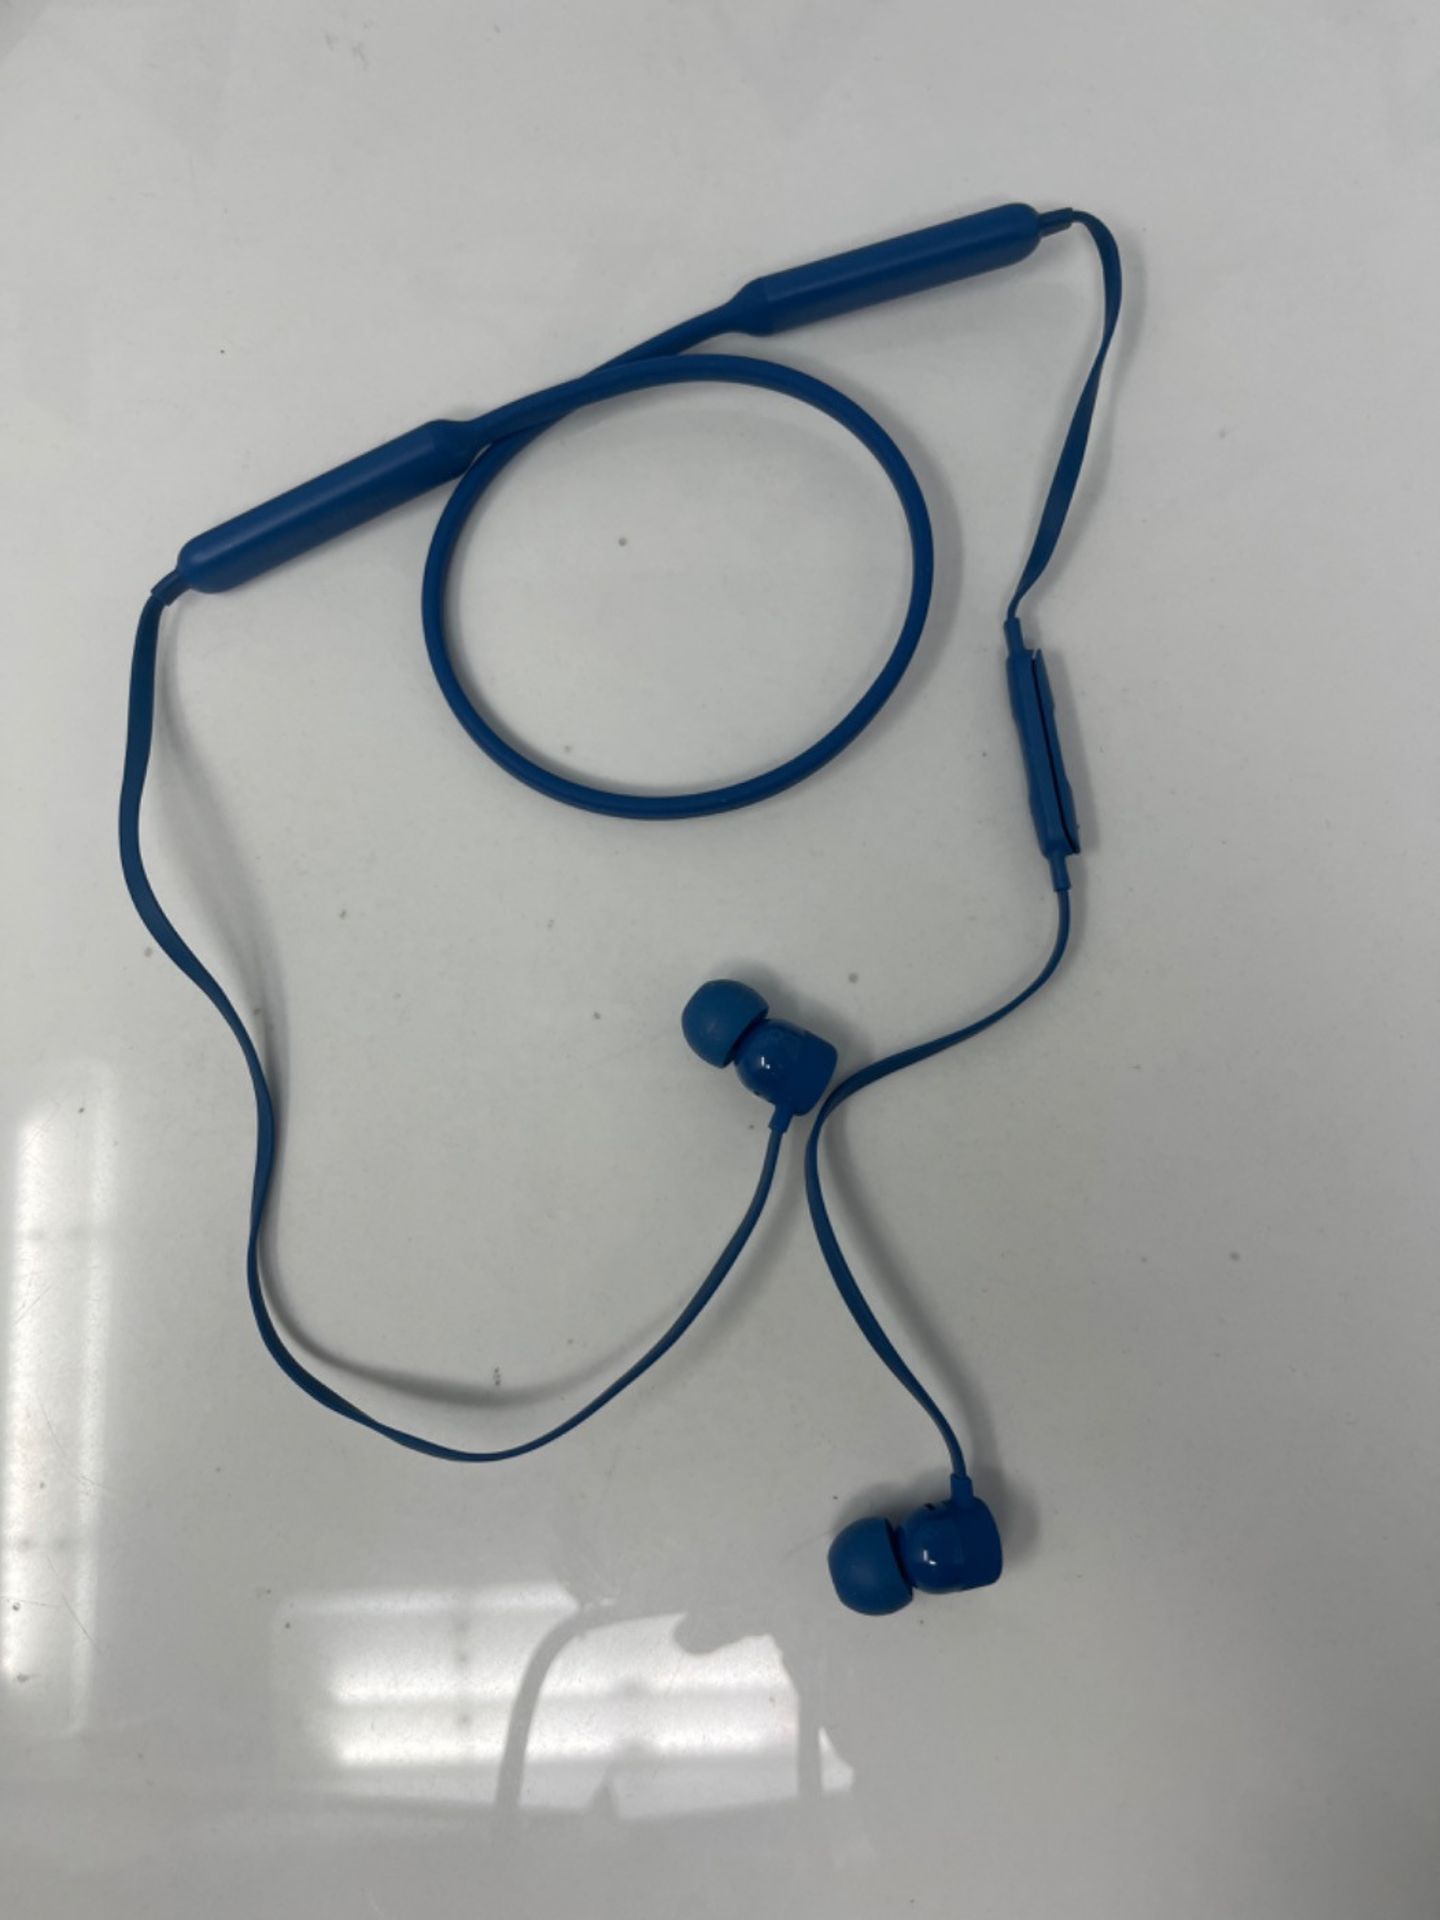 RRP £146.00 BeatsX Wireless In-Ear Headphones (2016 Model) - Blue - Image 3 of 3